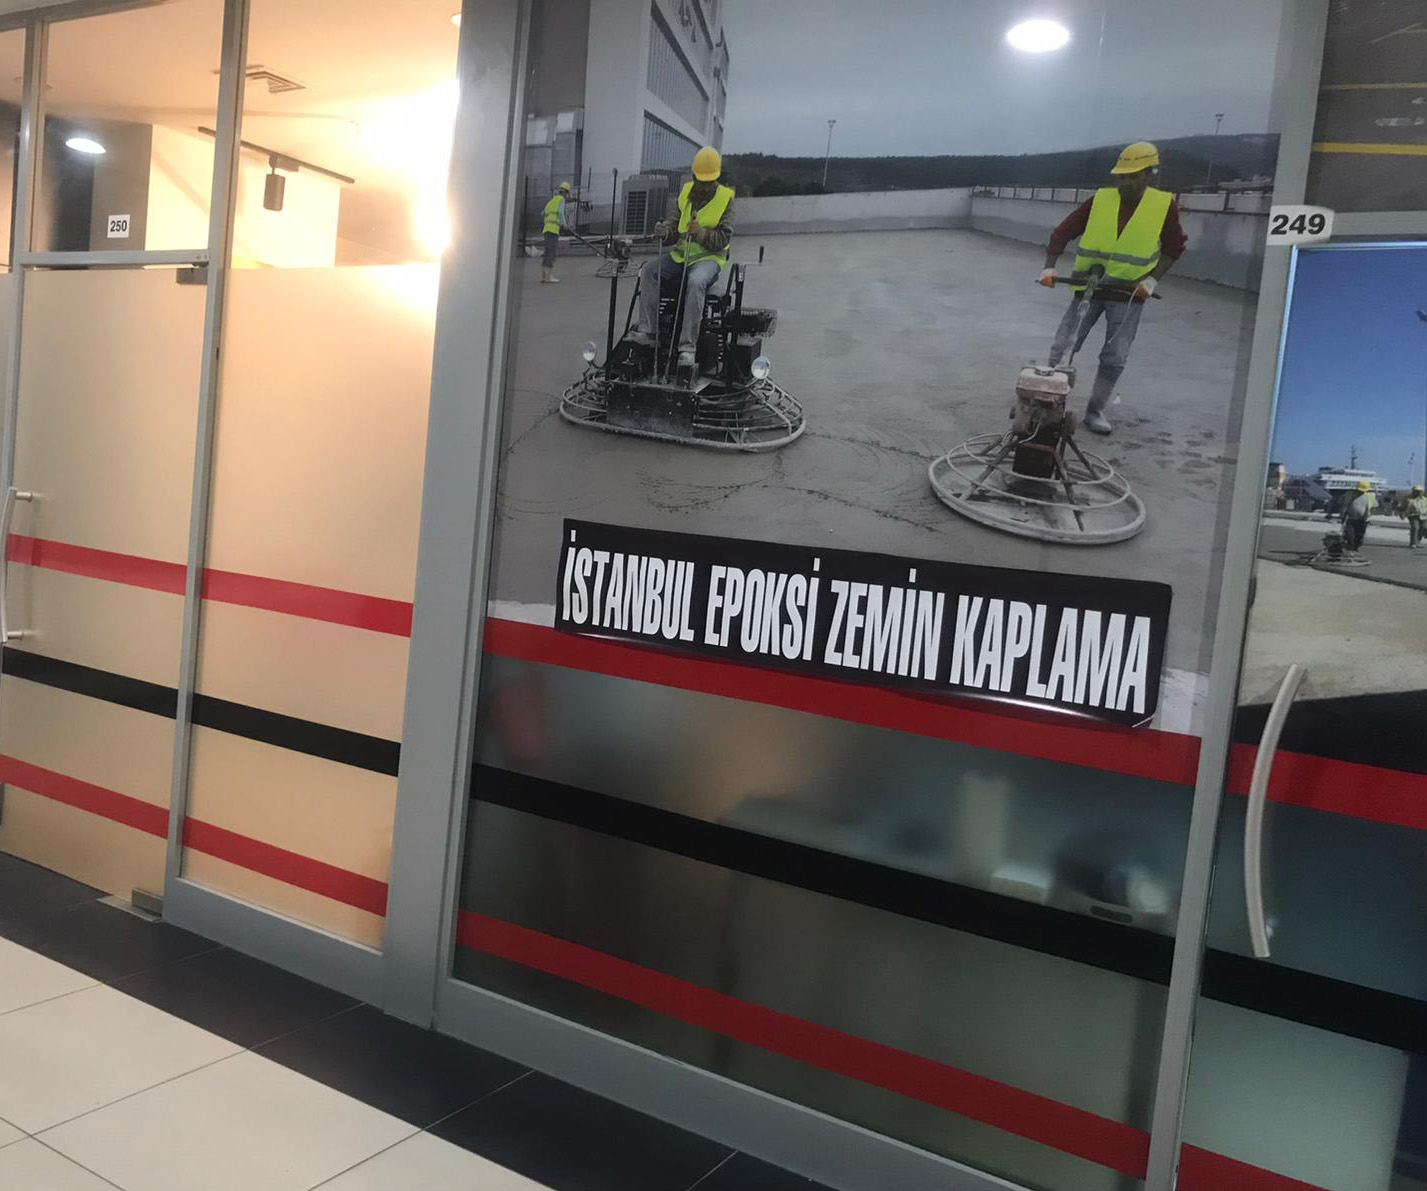 İstanbul Epoksi Zemin Kaplama Hakkımızda